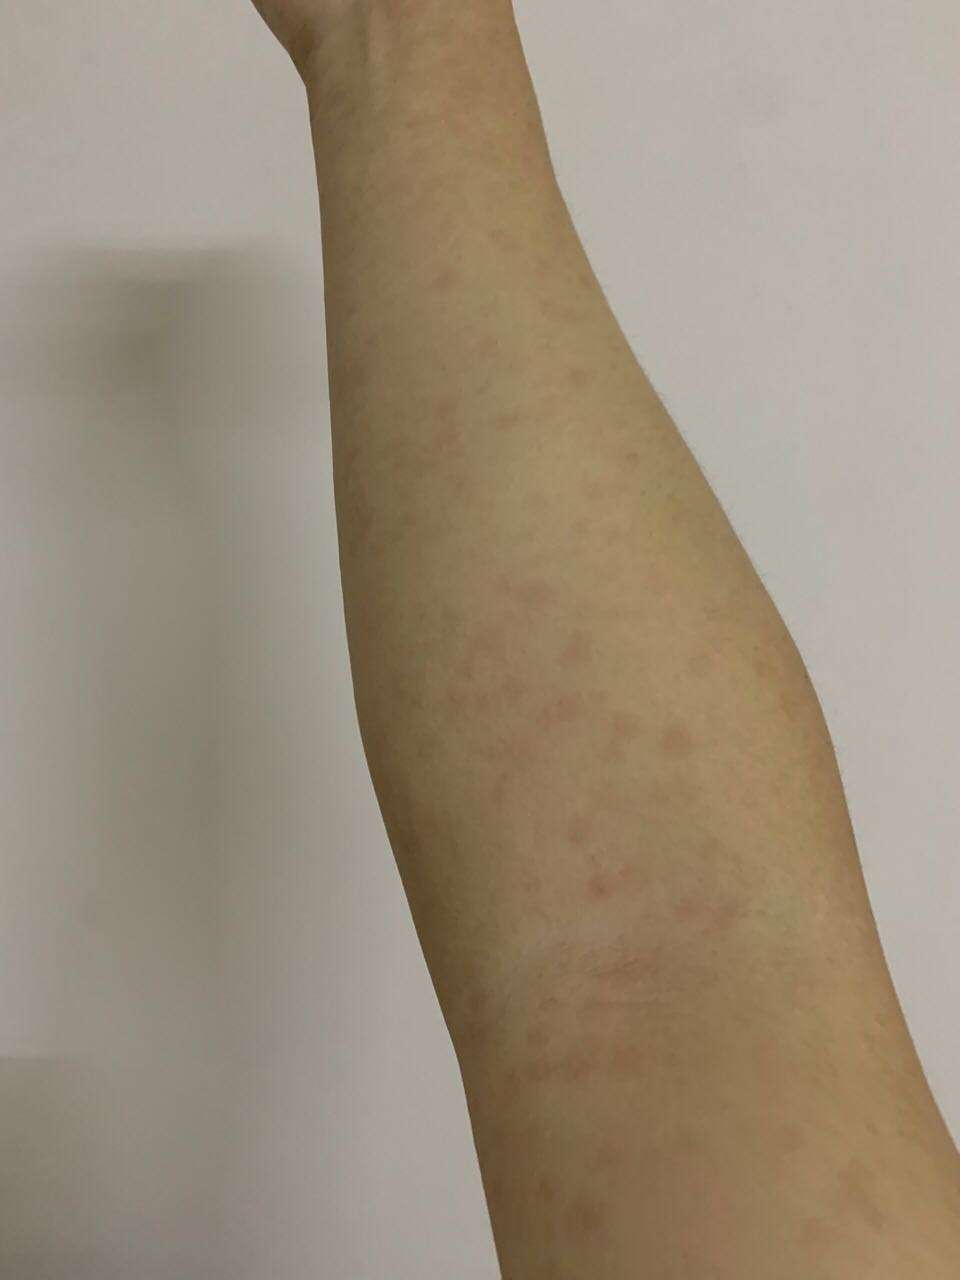 女 三个月前高危行为,最近手臂上出现这种红斑,而且越变越多,是梅毒的